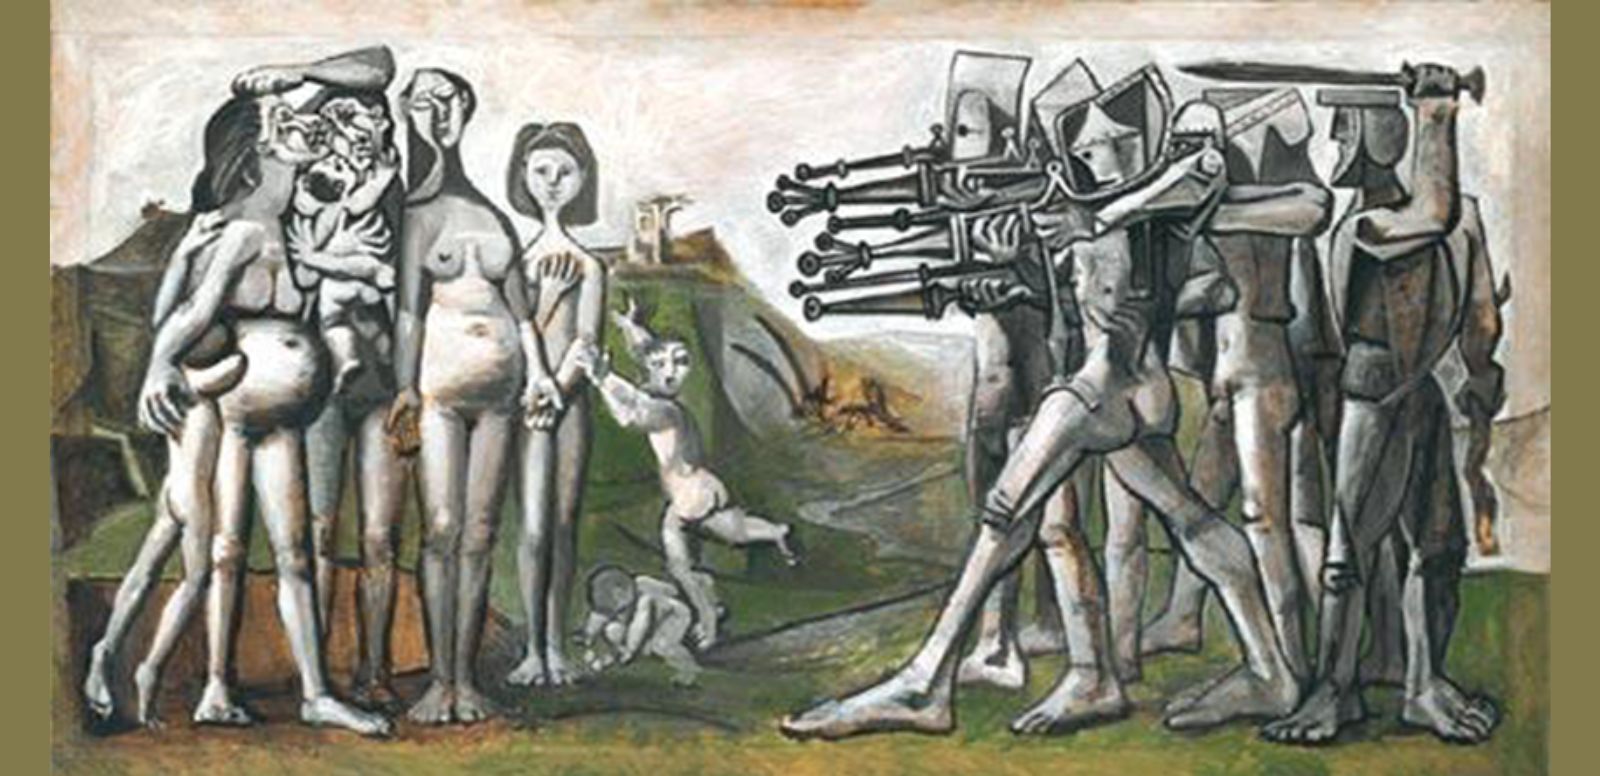 Pablo Picasso, “Masacre en Corea”, 1951